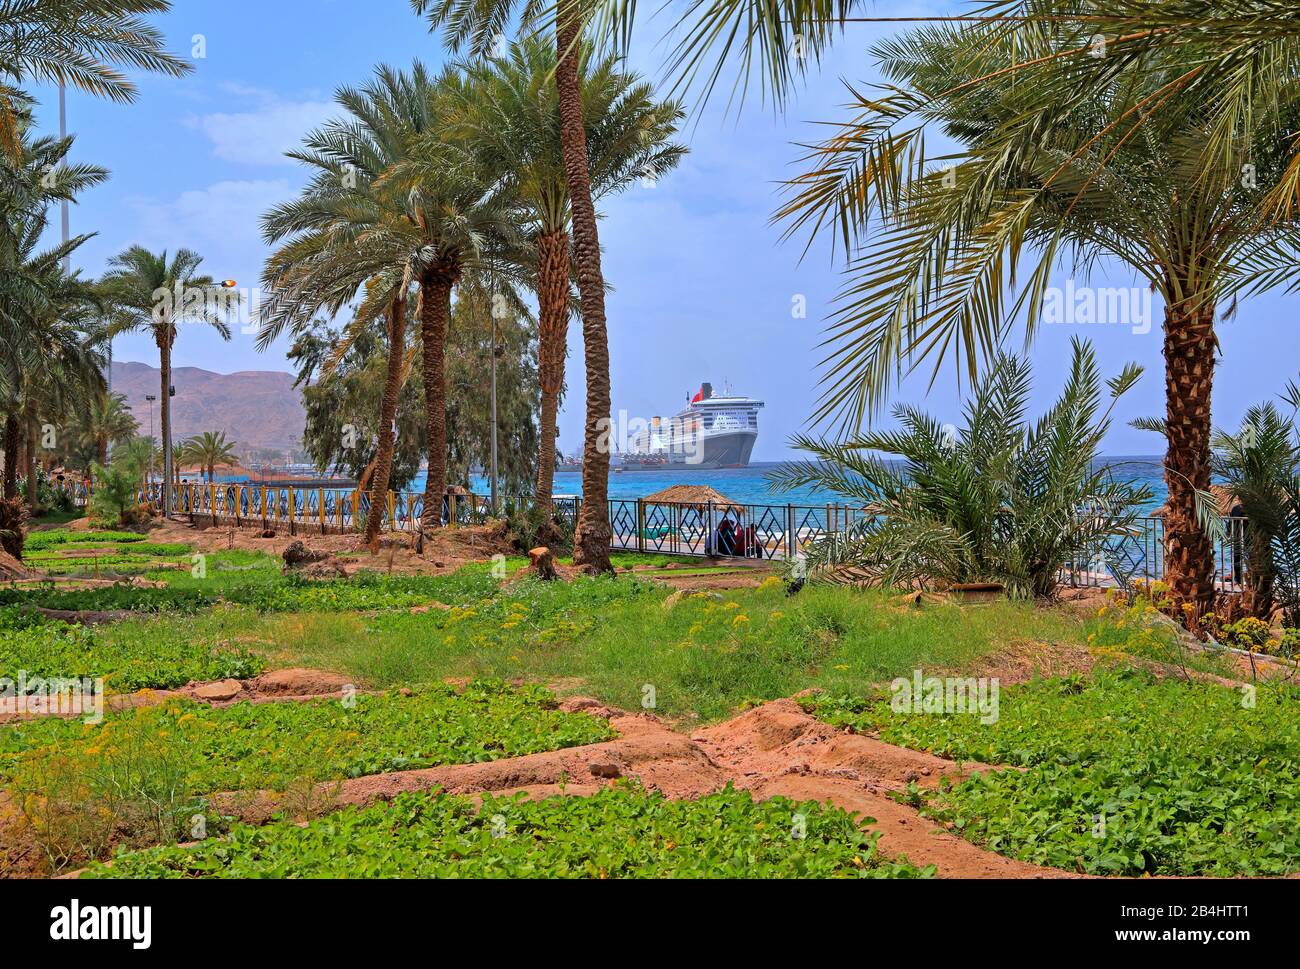 Palmenhain mit Gemüsegärten an der Strandpromenade am Meer. Akaba Akaba, Golf von Akaba, Rotes Meer, Jordanien Stockfoto